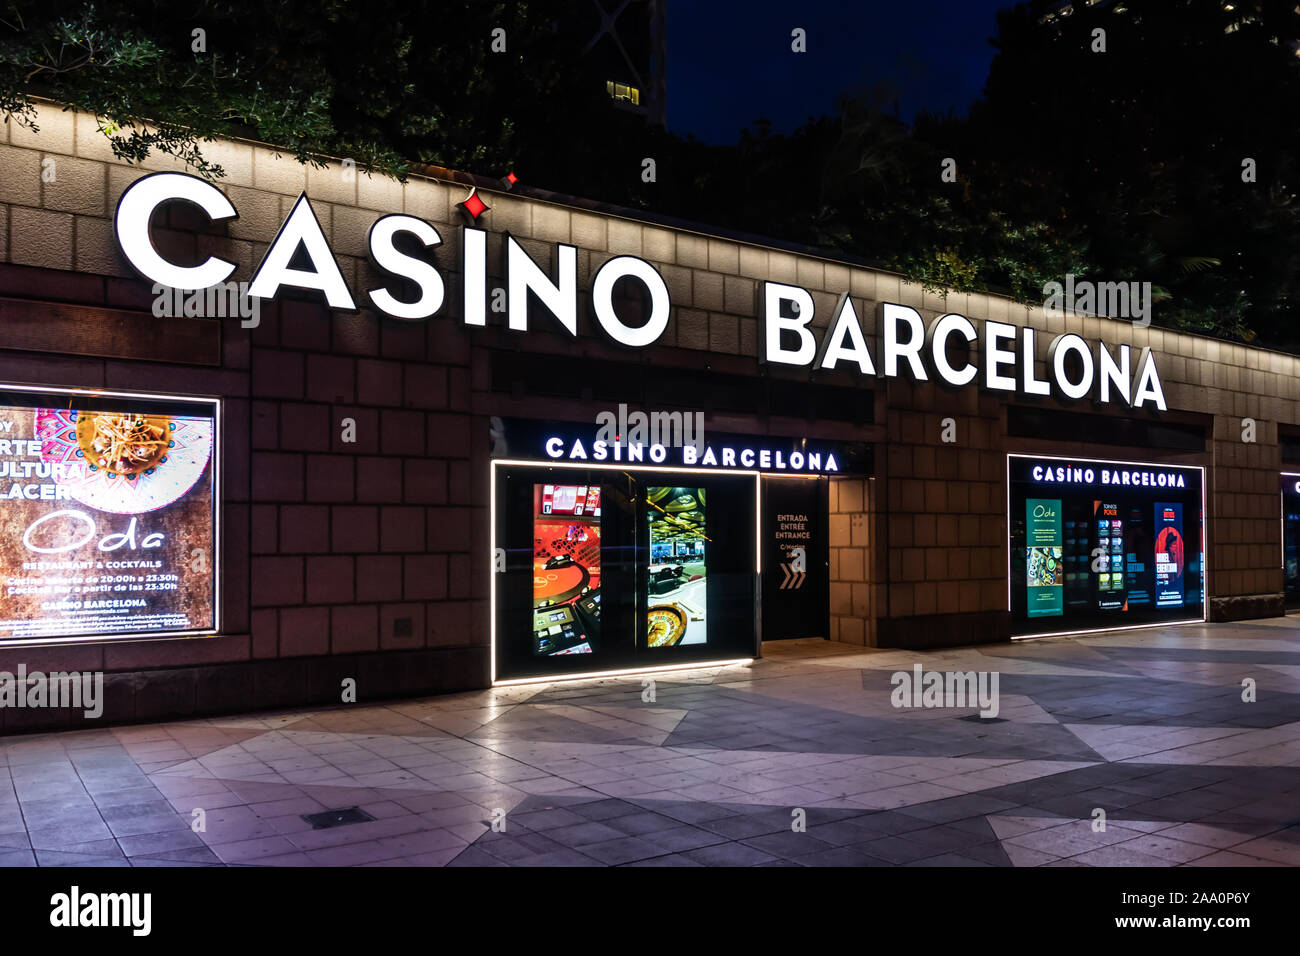 Barcelona, Spain - Nov 15, 2019: Casino Barcelona side entrance view. Stock Photo